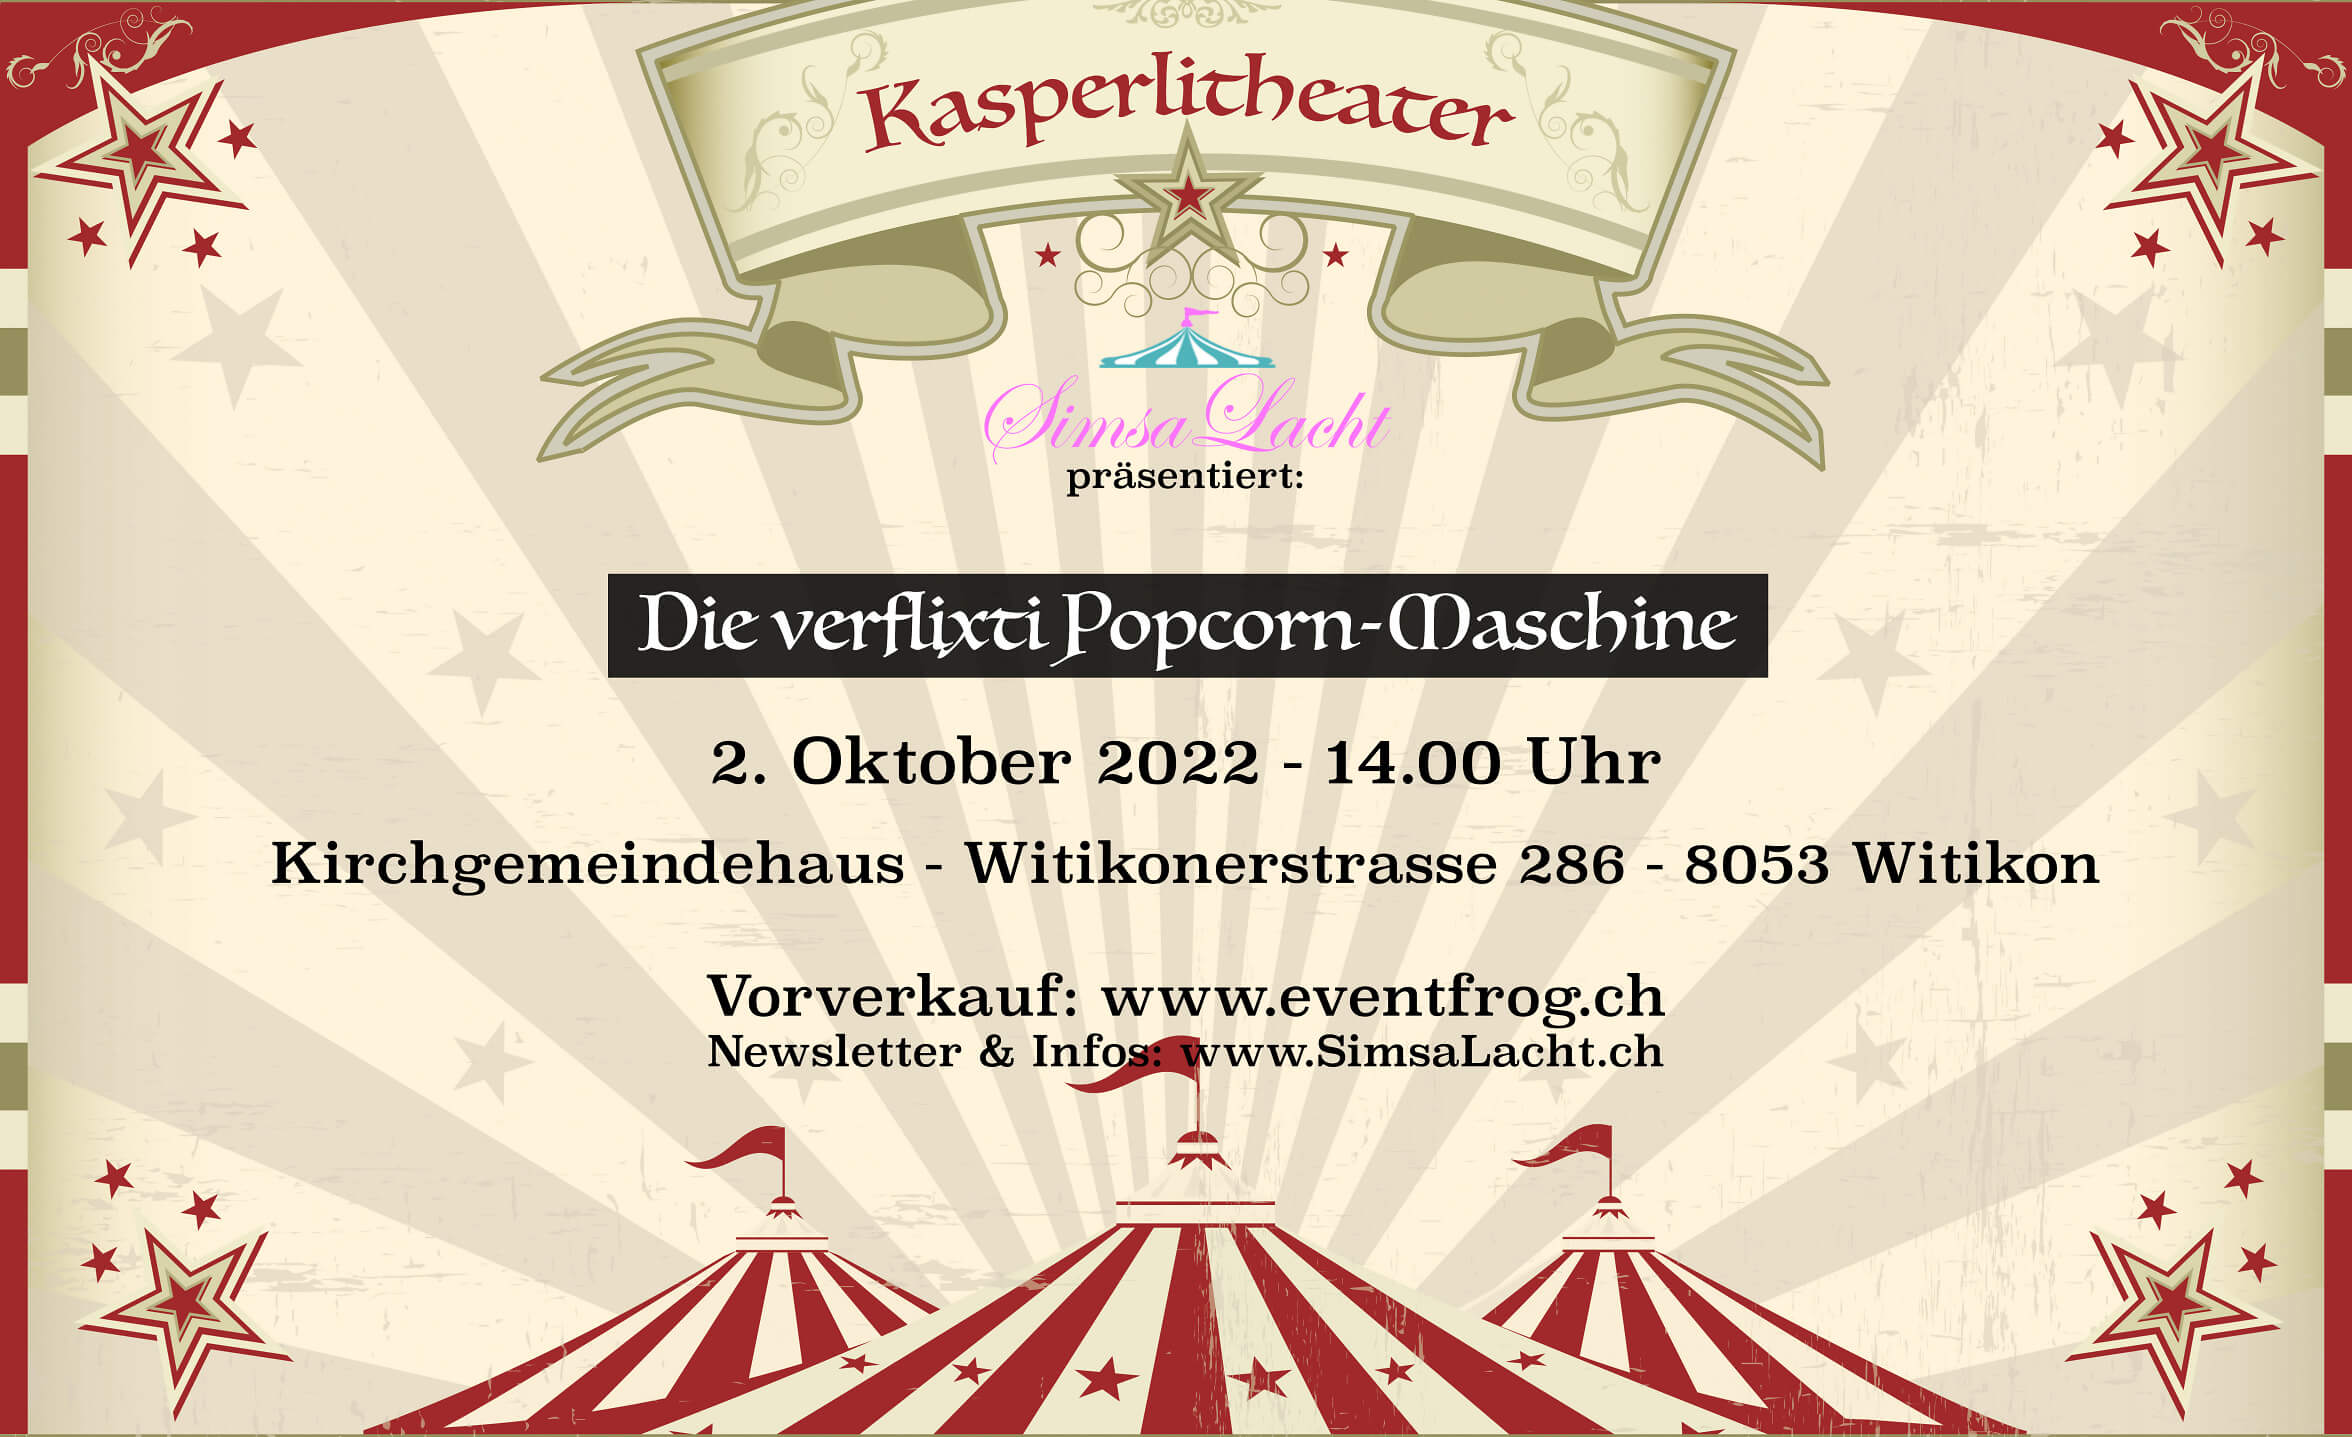 Event-Image for '"Die verflixti Popcorn-Maschine" Kasperlitheater SimsaLacht '